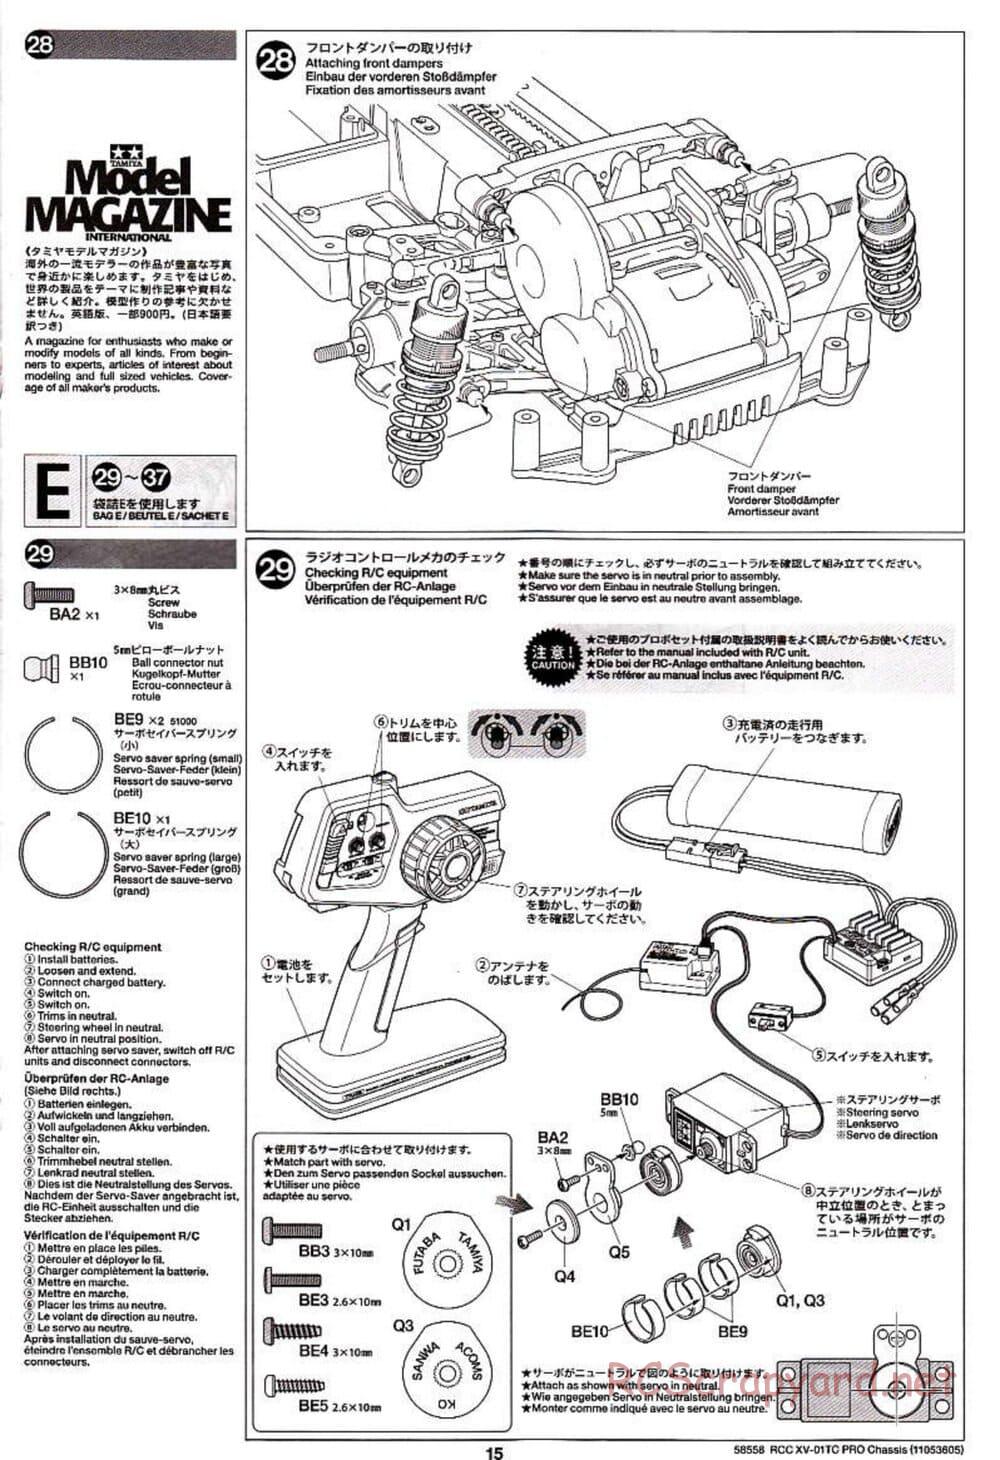 Tamiya - XV-01TC Chassis - Manual - Page 15